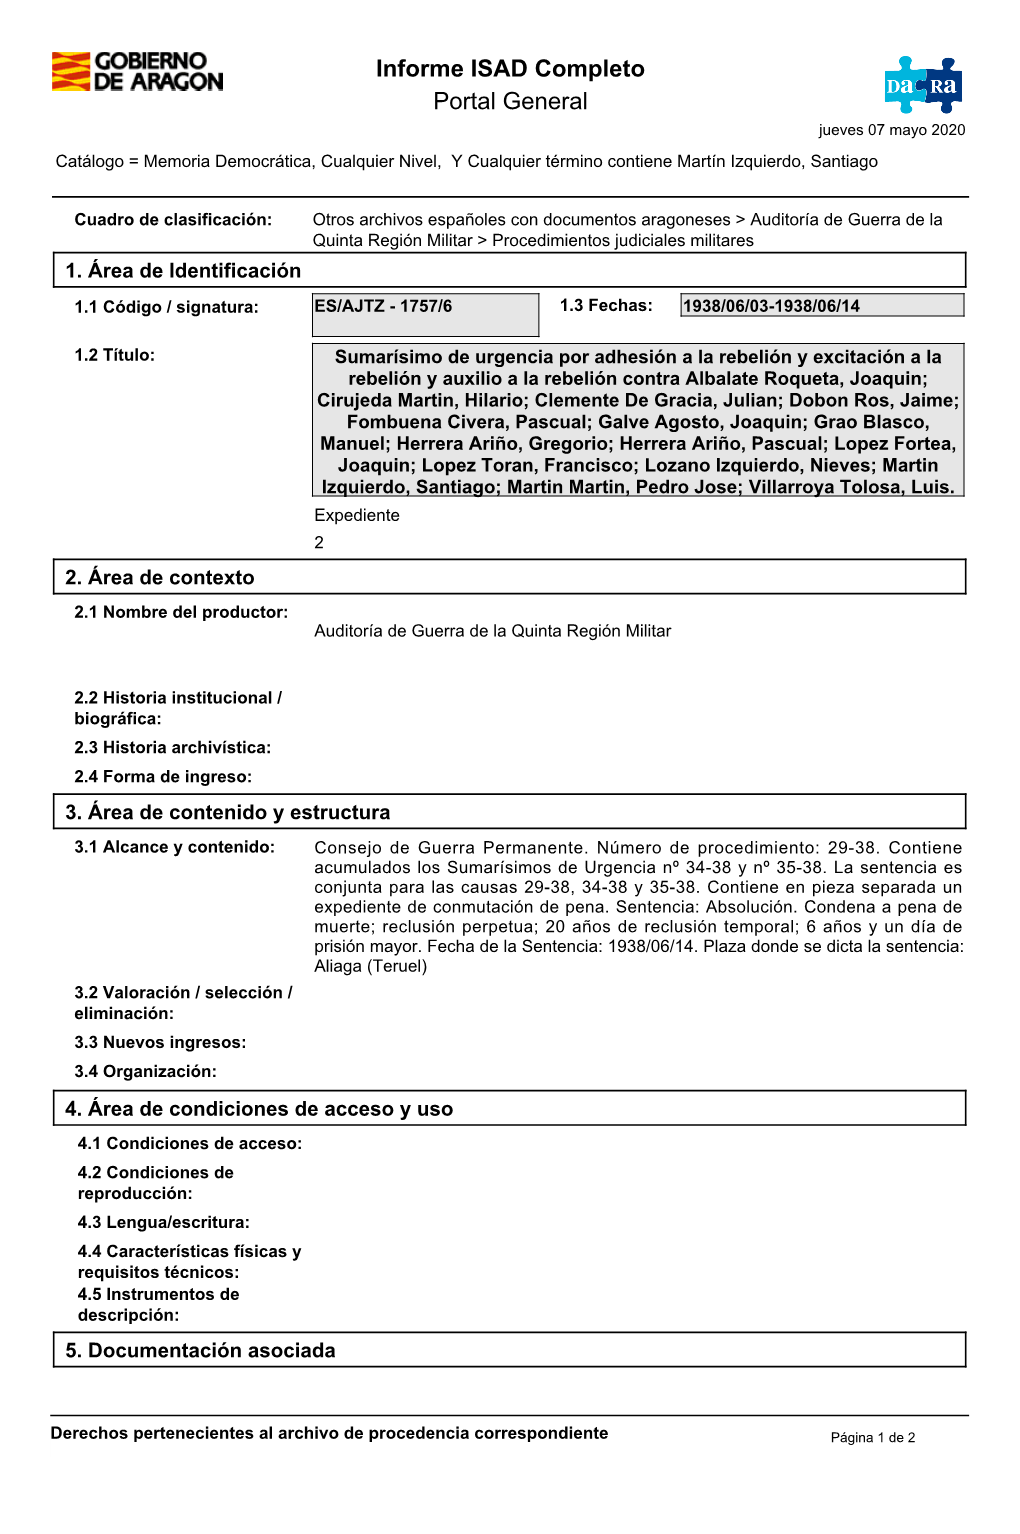 Informe ISAD Completo Portal General Jueves 07 Mayo 2020 Catálogo = Memoria Democrática, Cualquier Nivel, Y Cualquier Término Contiene Martín Izquierdo, Santiago